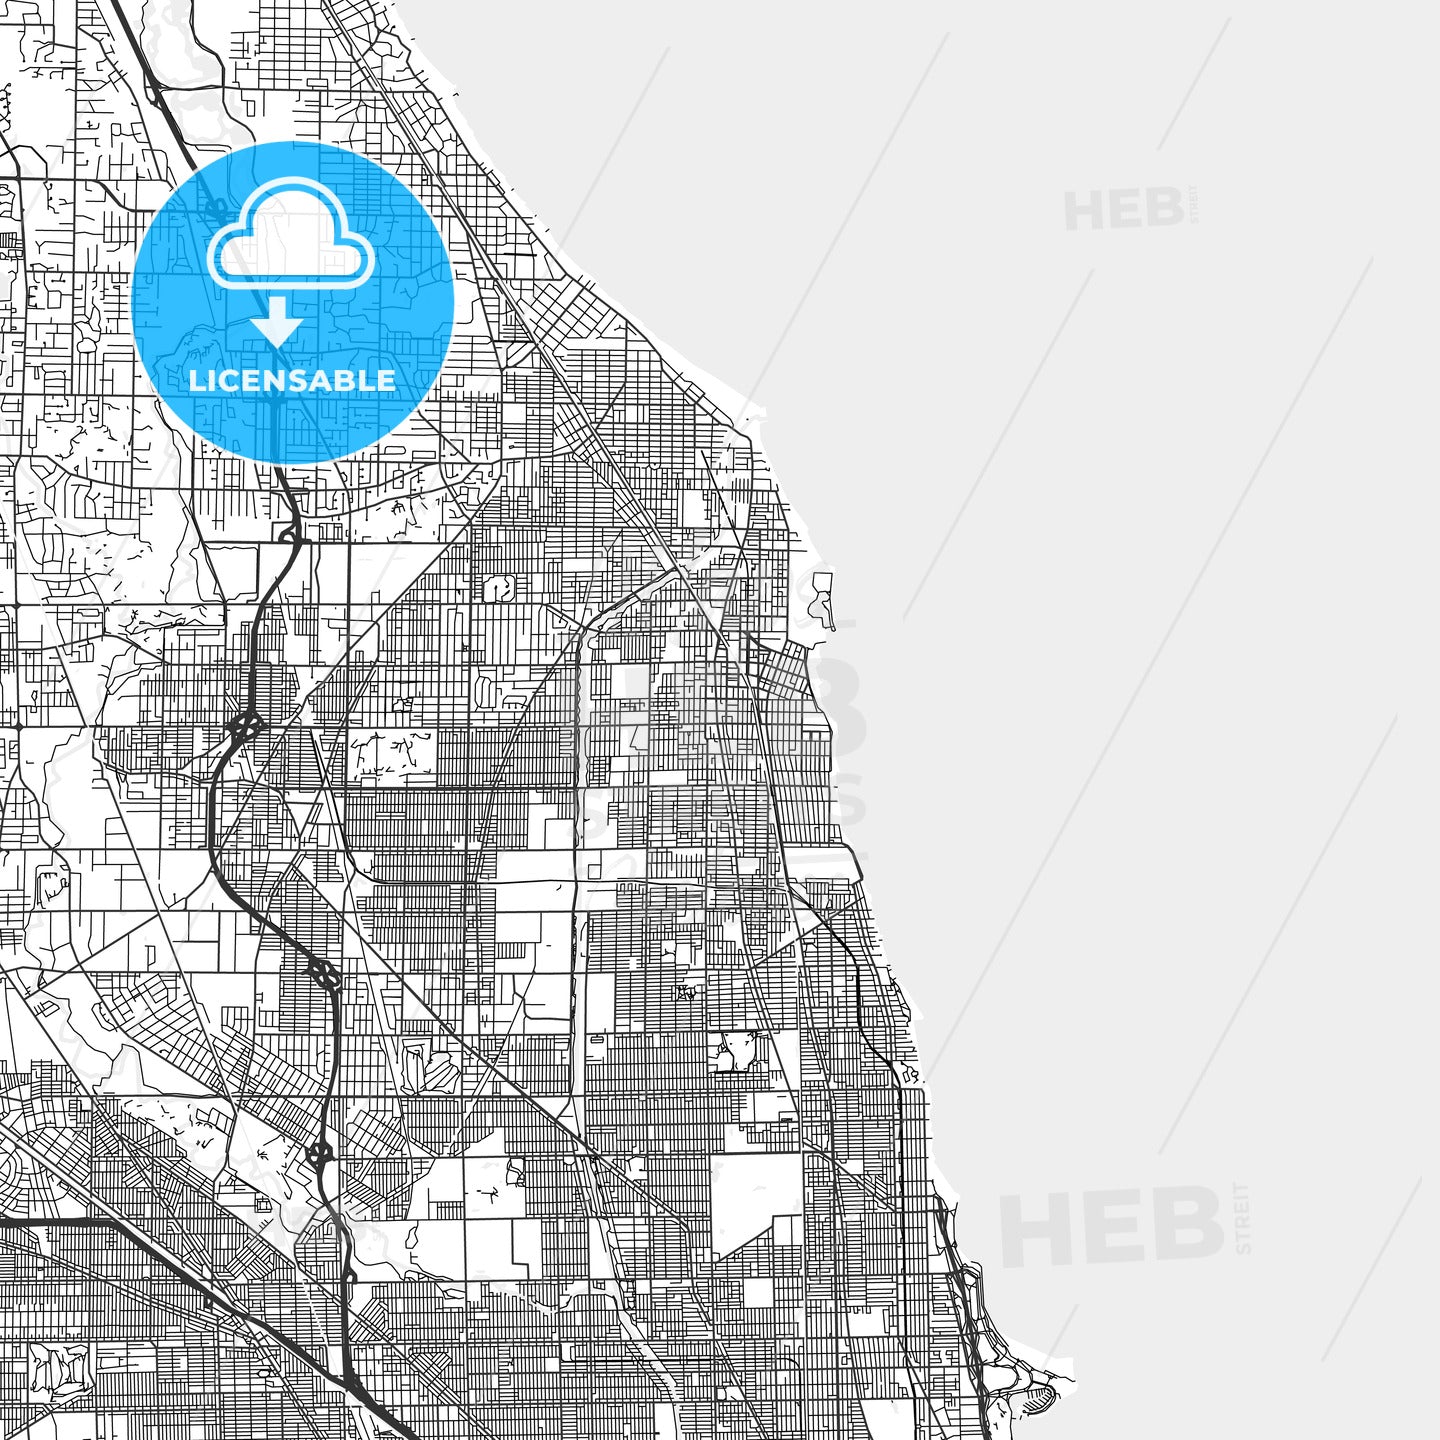 Evanston, Illinois - Area Map - Light